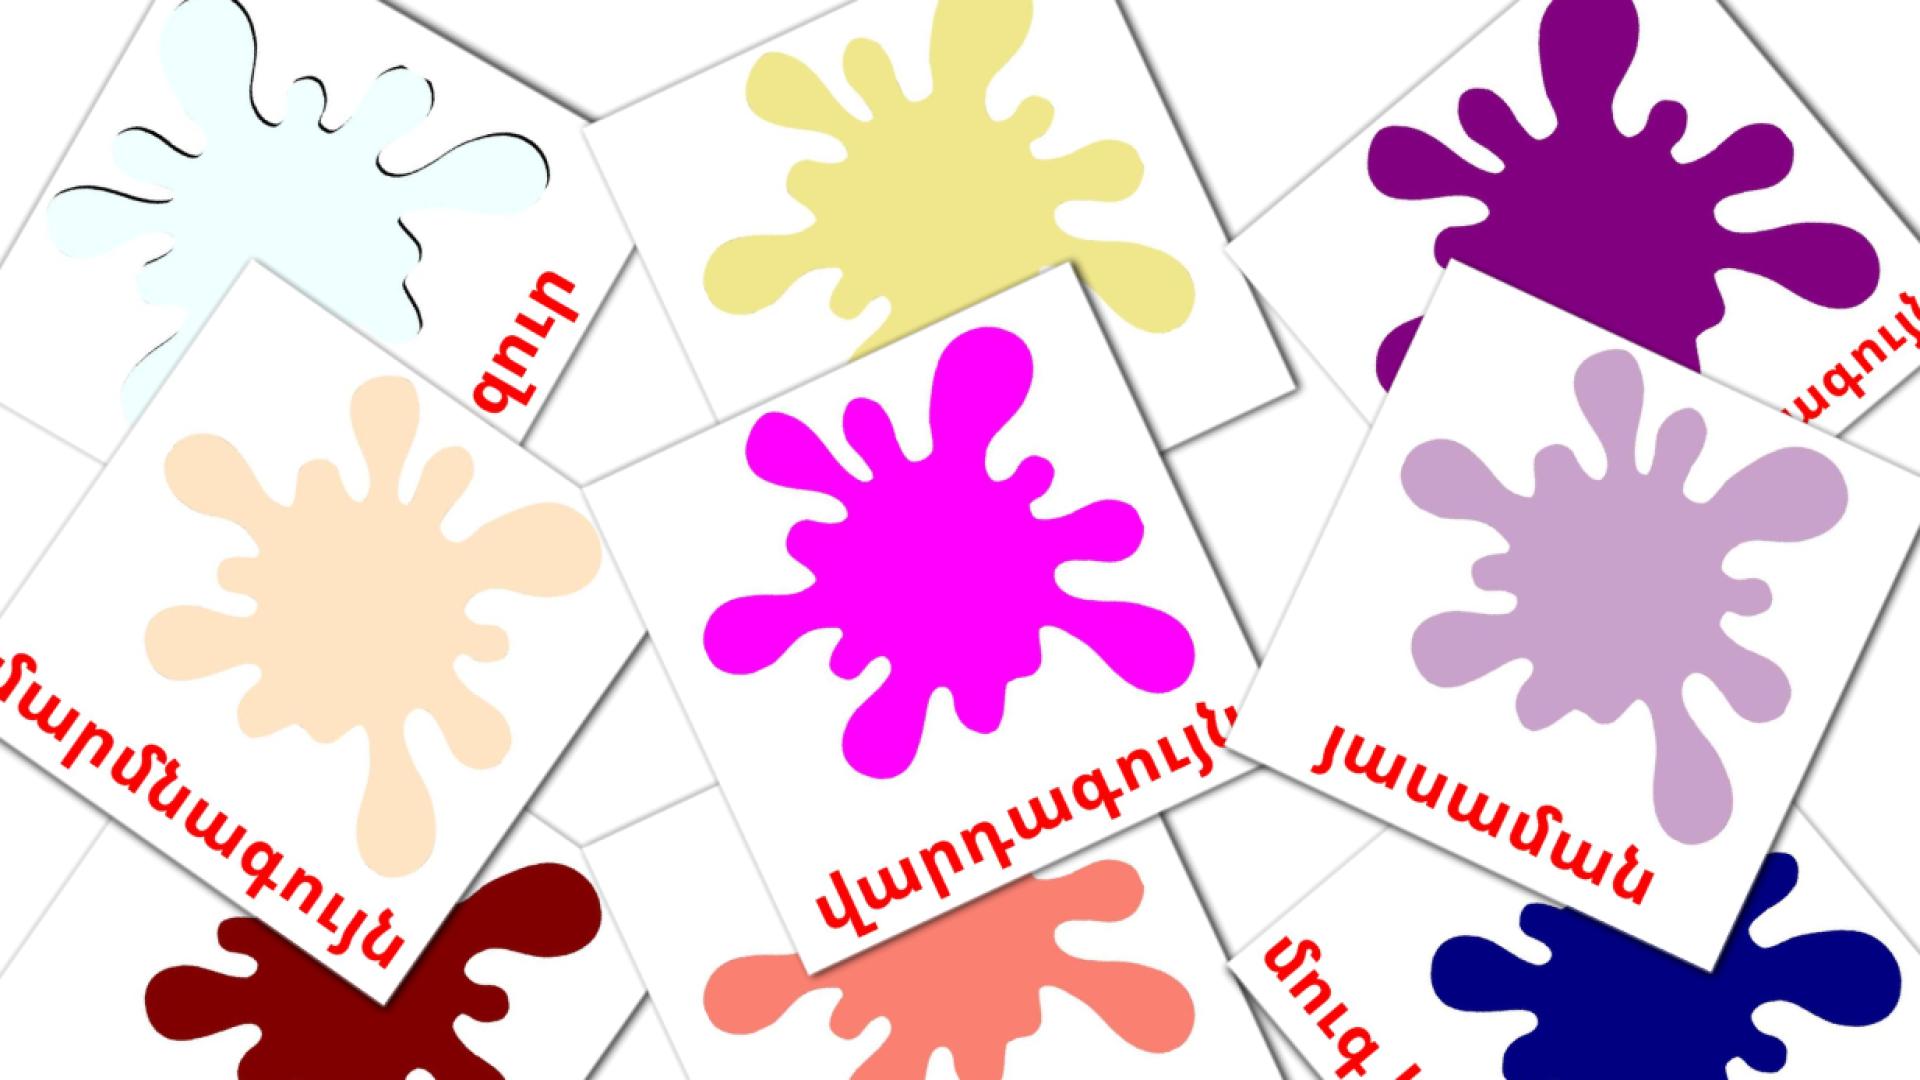 Colores secundarios - tarjetas de vocabulario en armenio